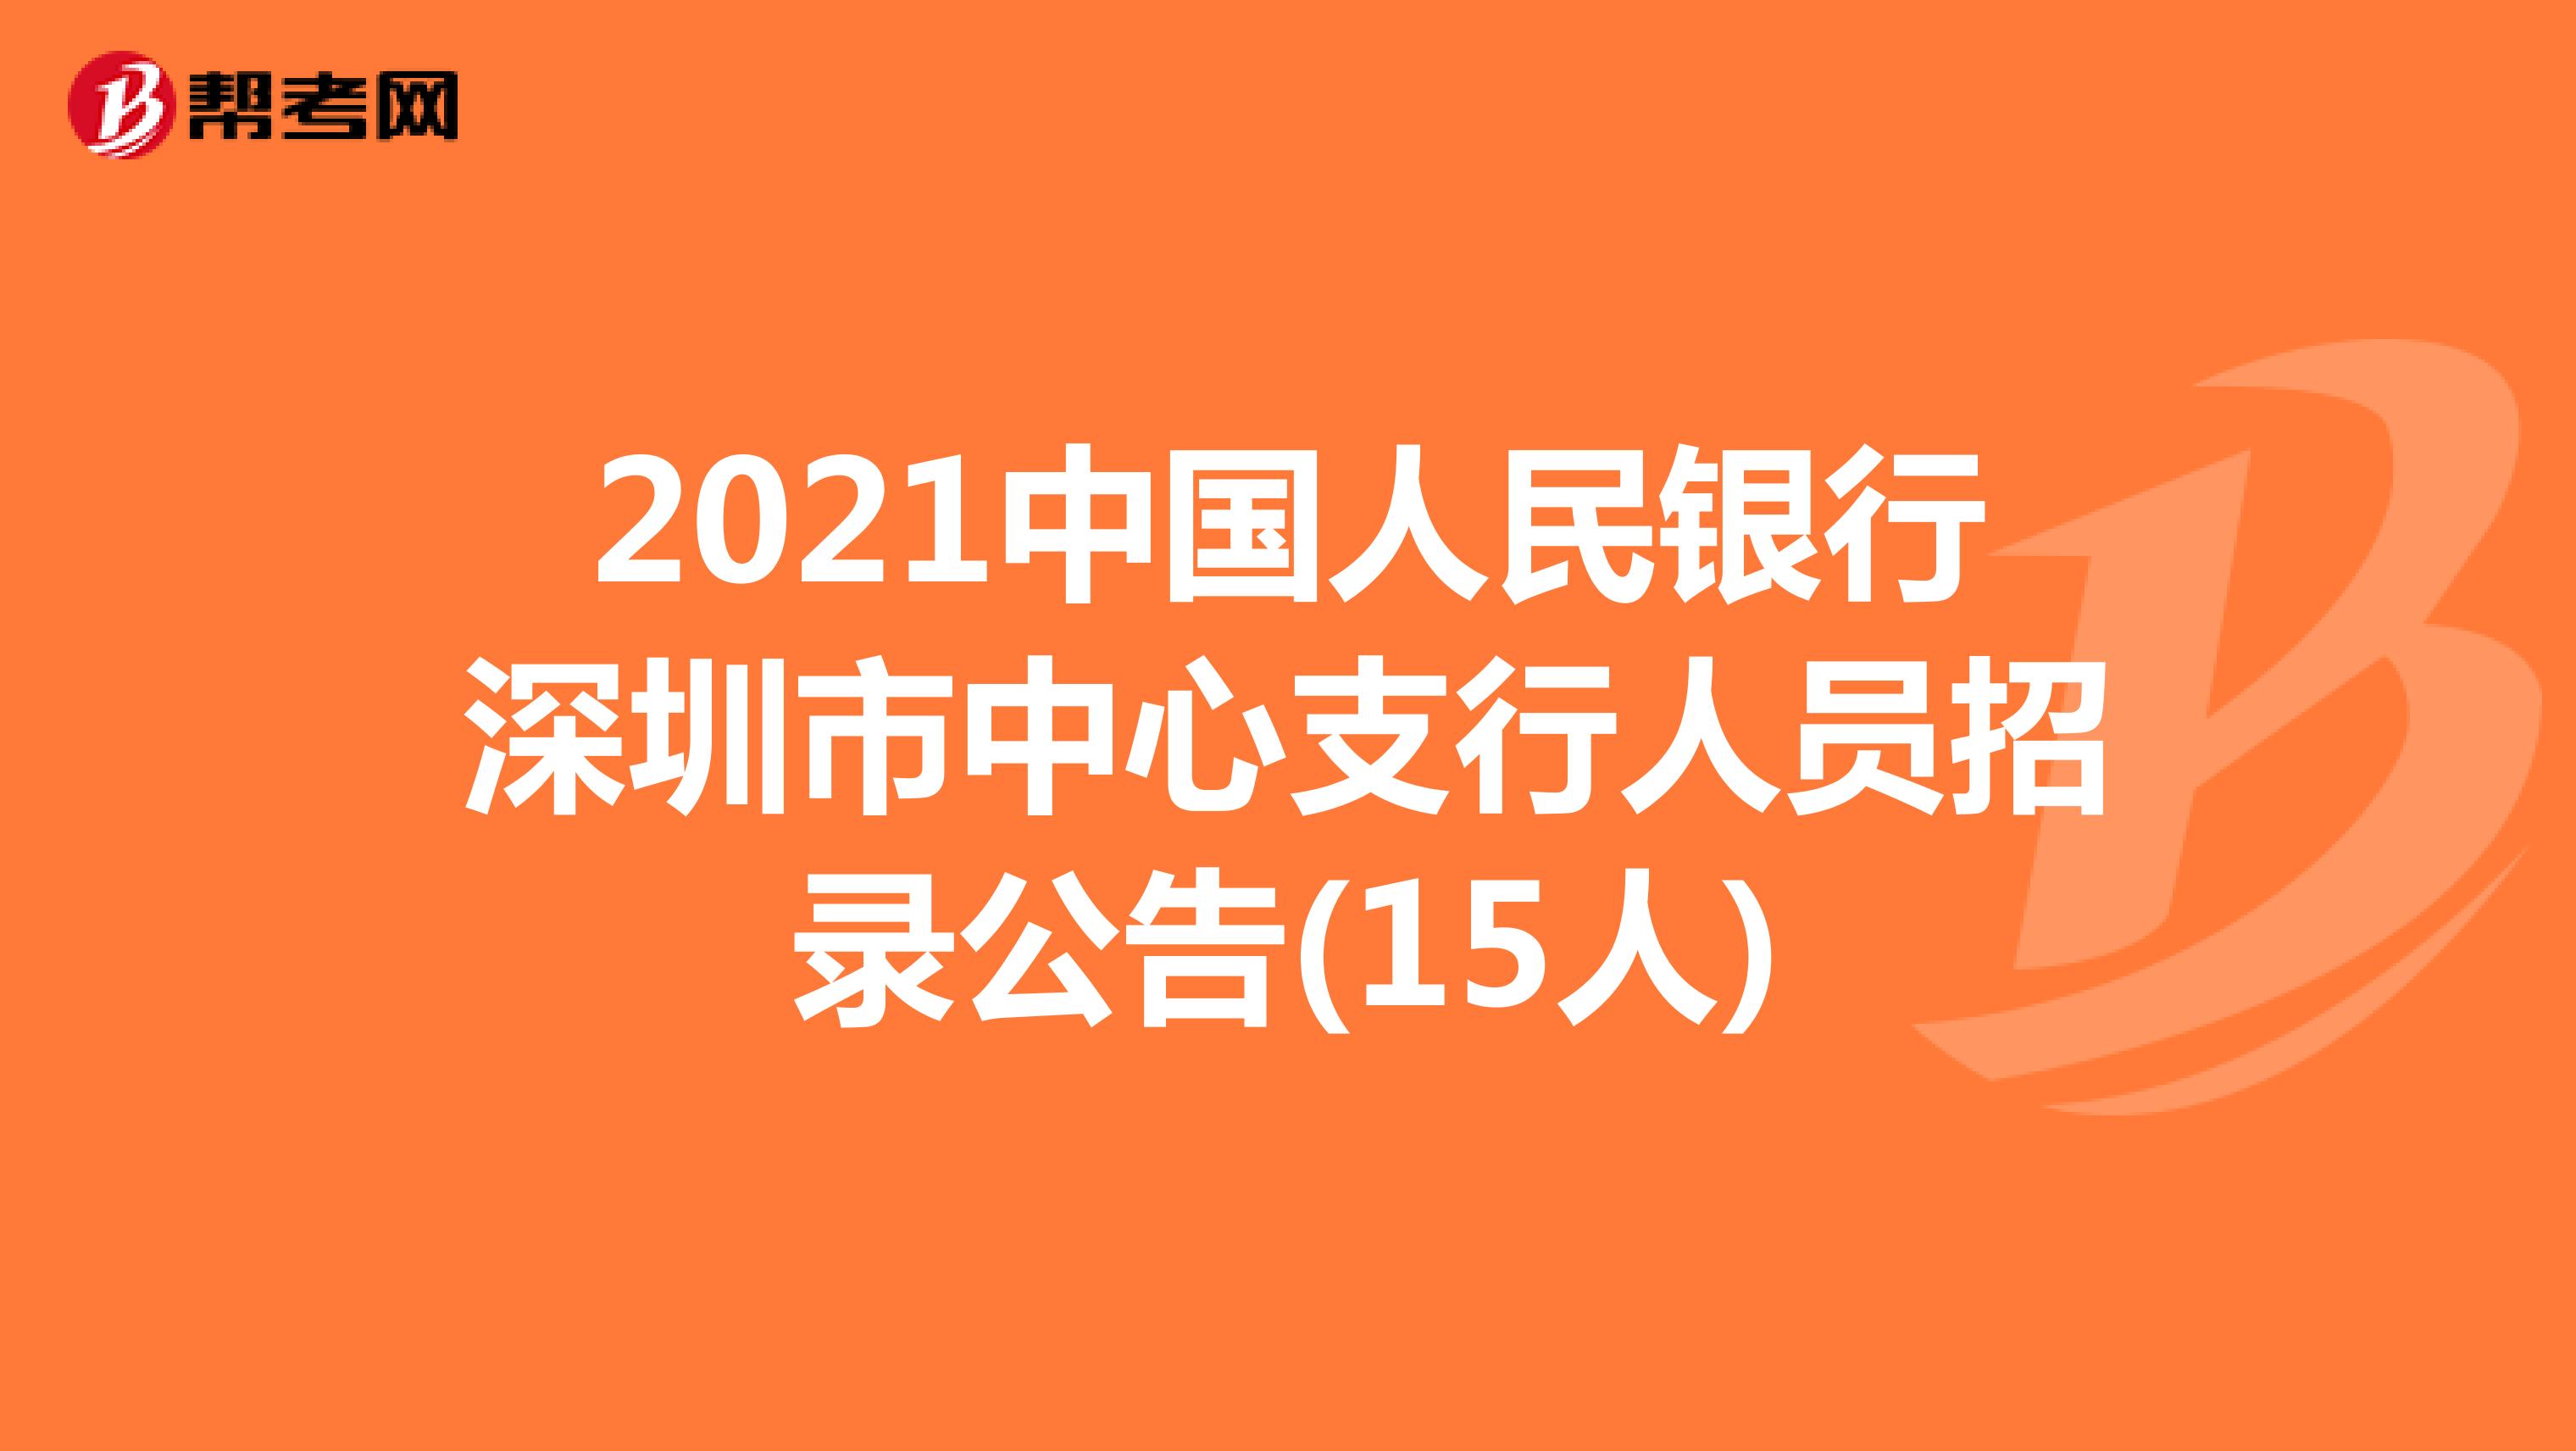 2021中国人民银行深圳市中心支行人员招录公告(15人)